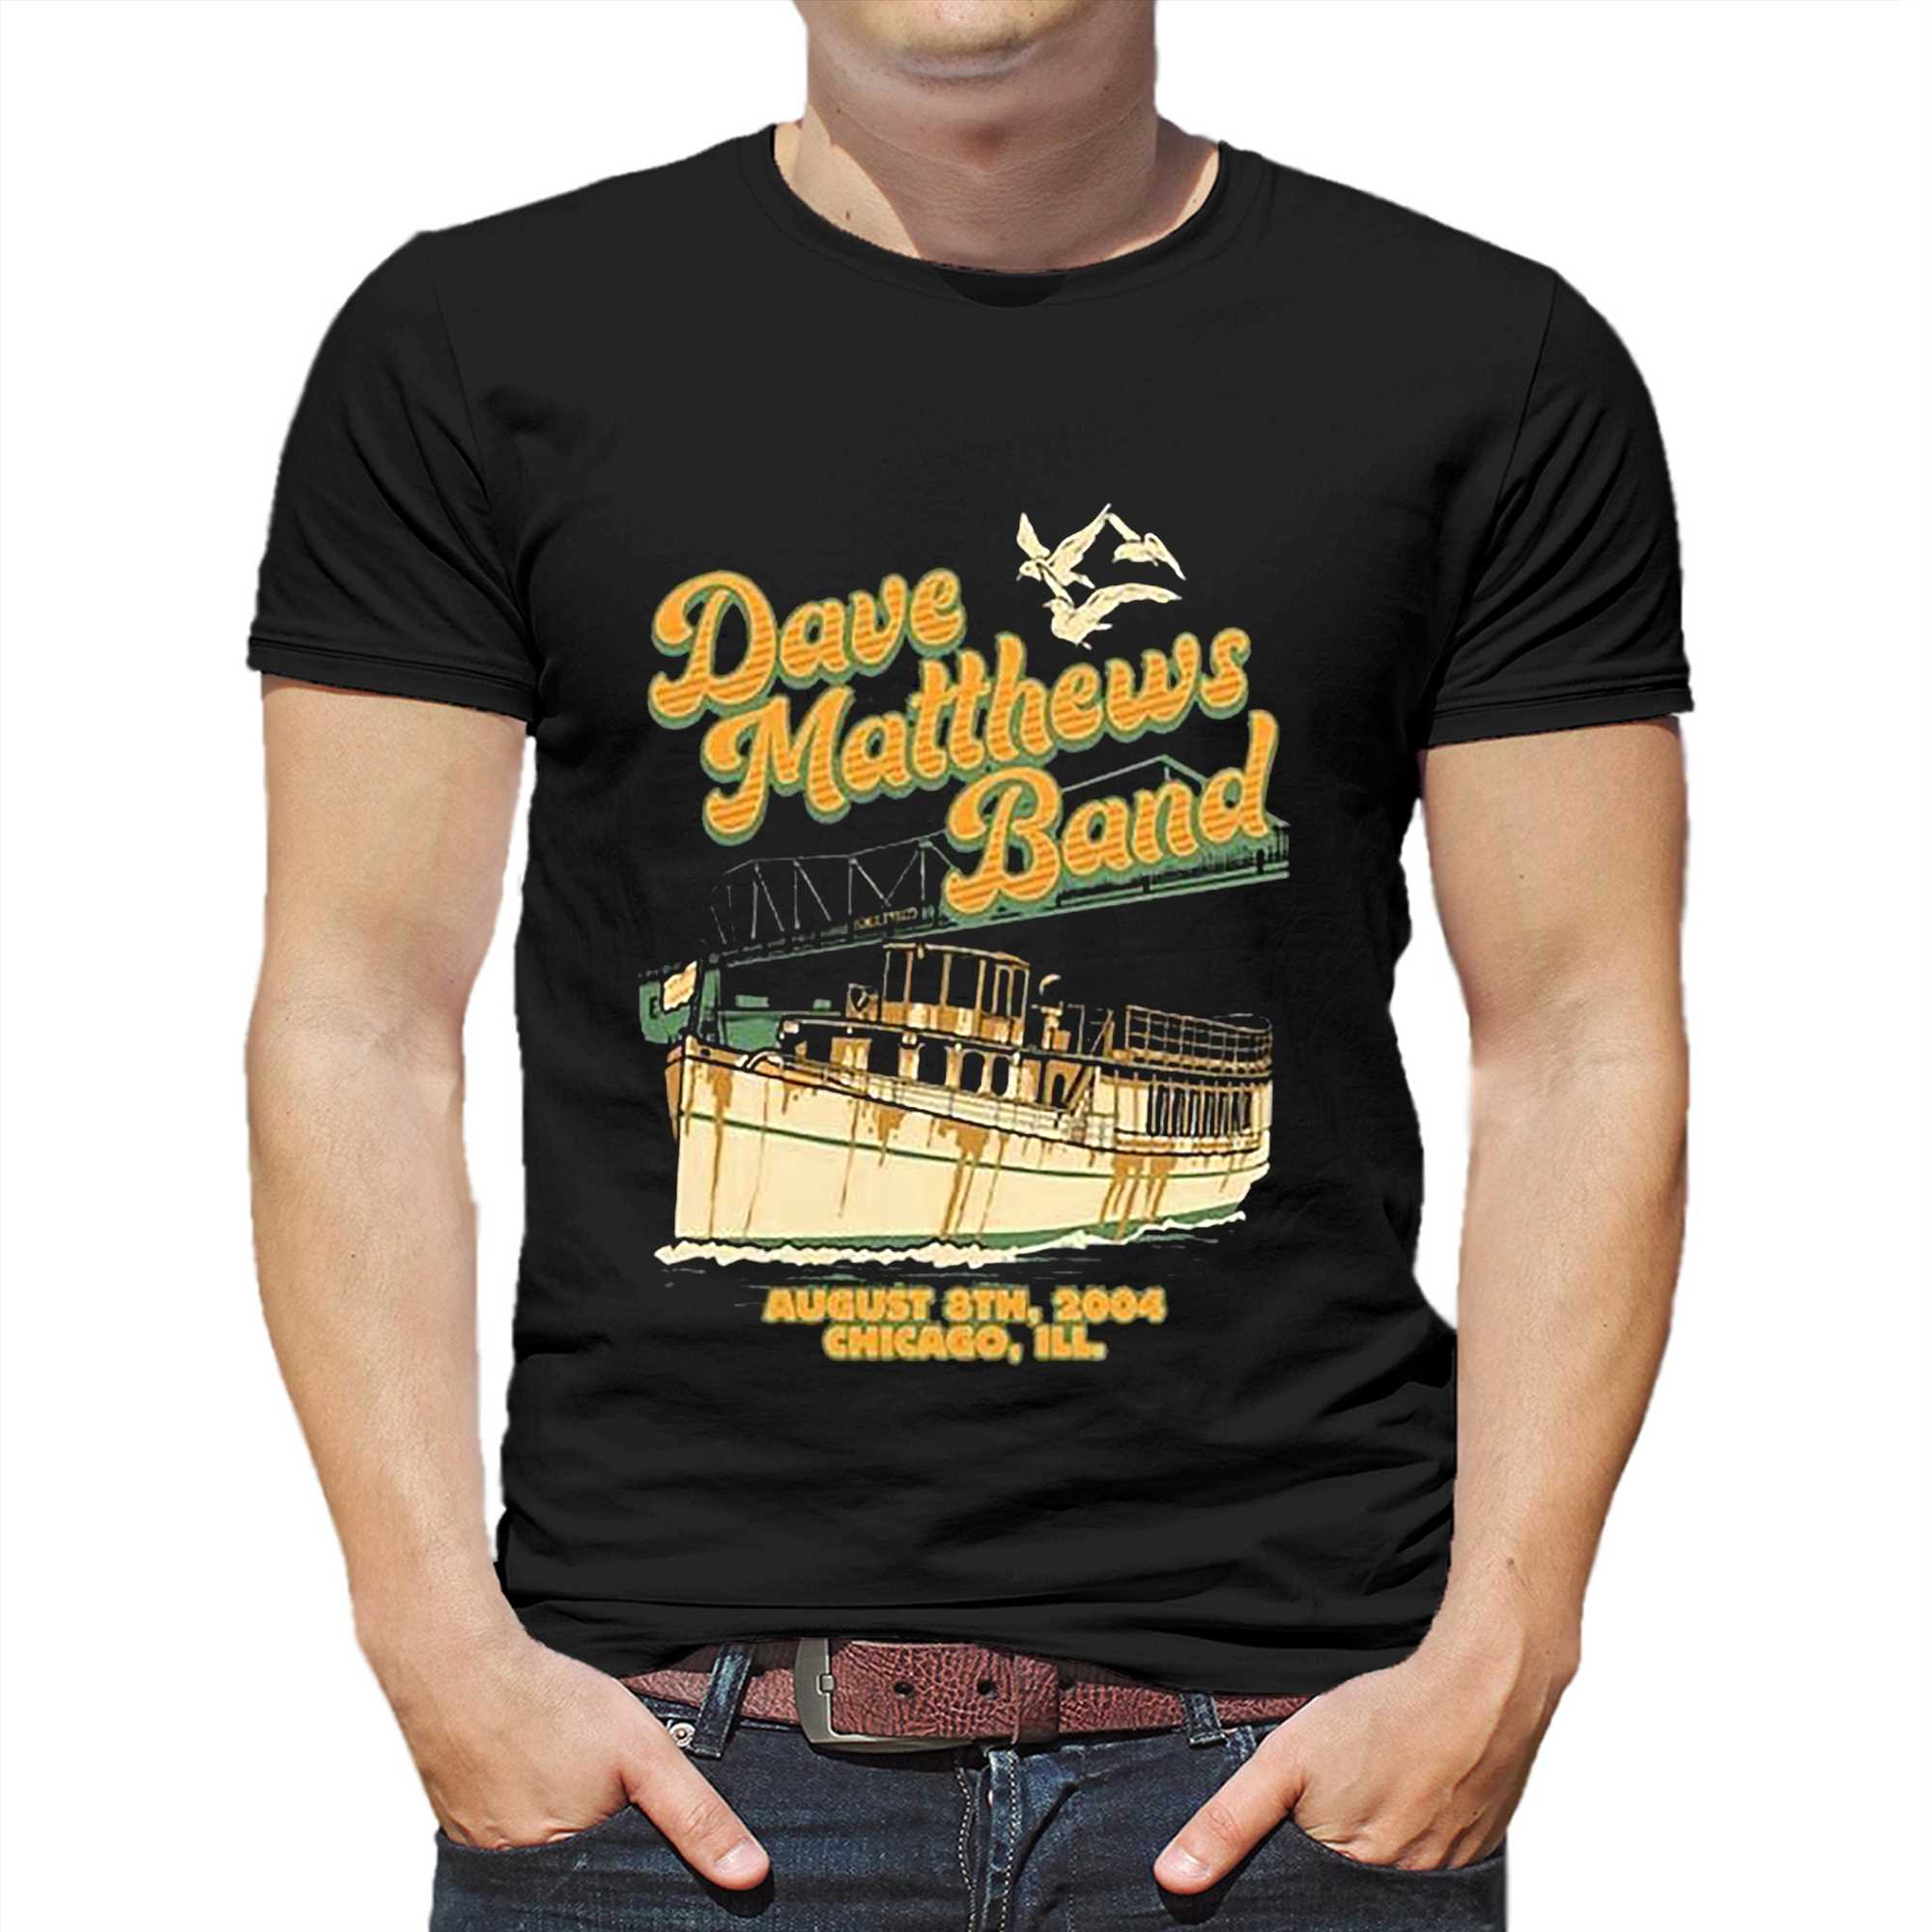 Colorado Rockies Mascot Dinger Shirt - Shibtee Clothing